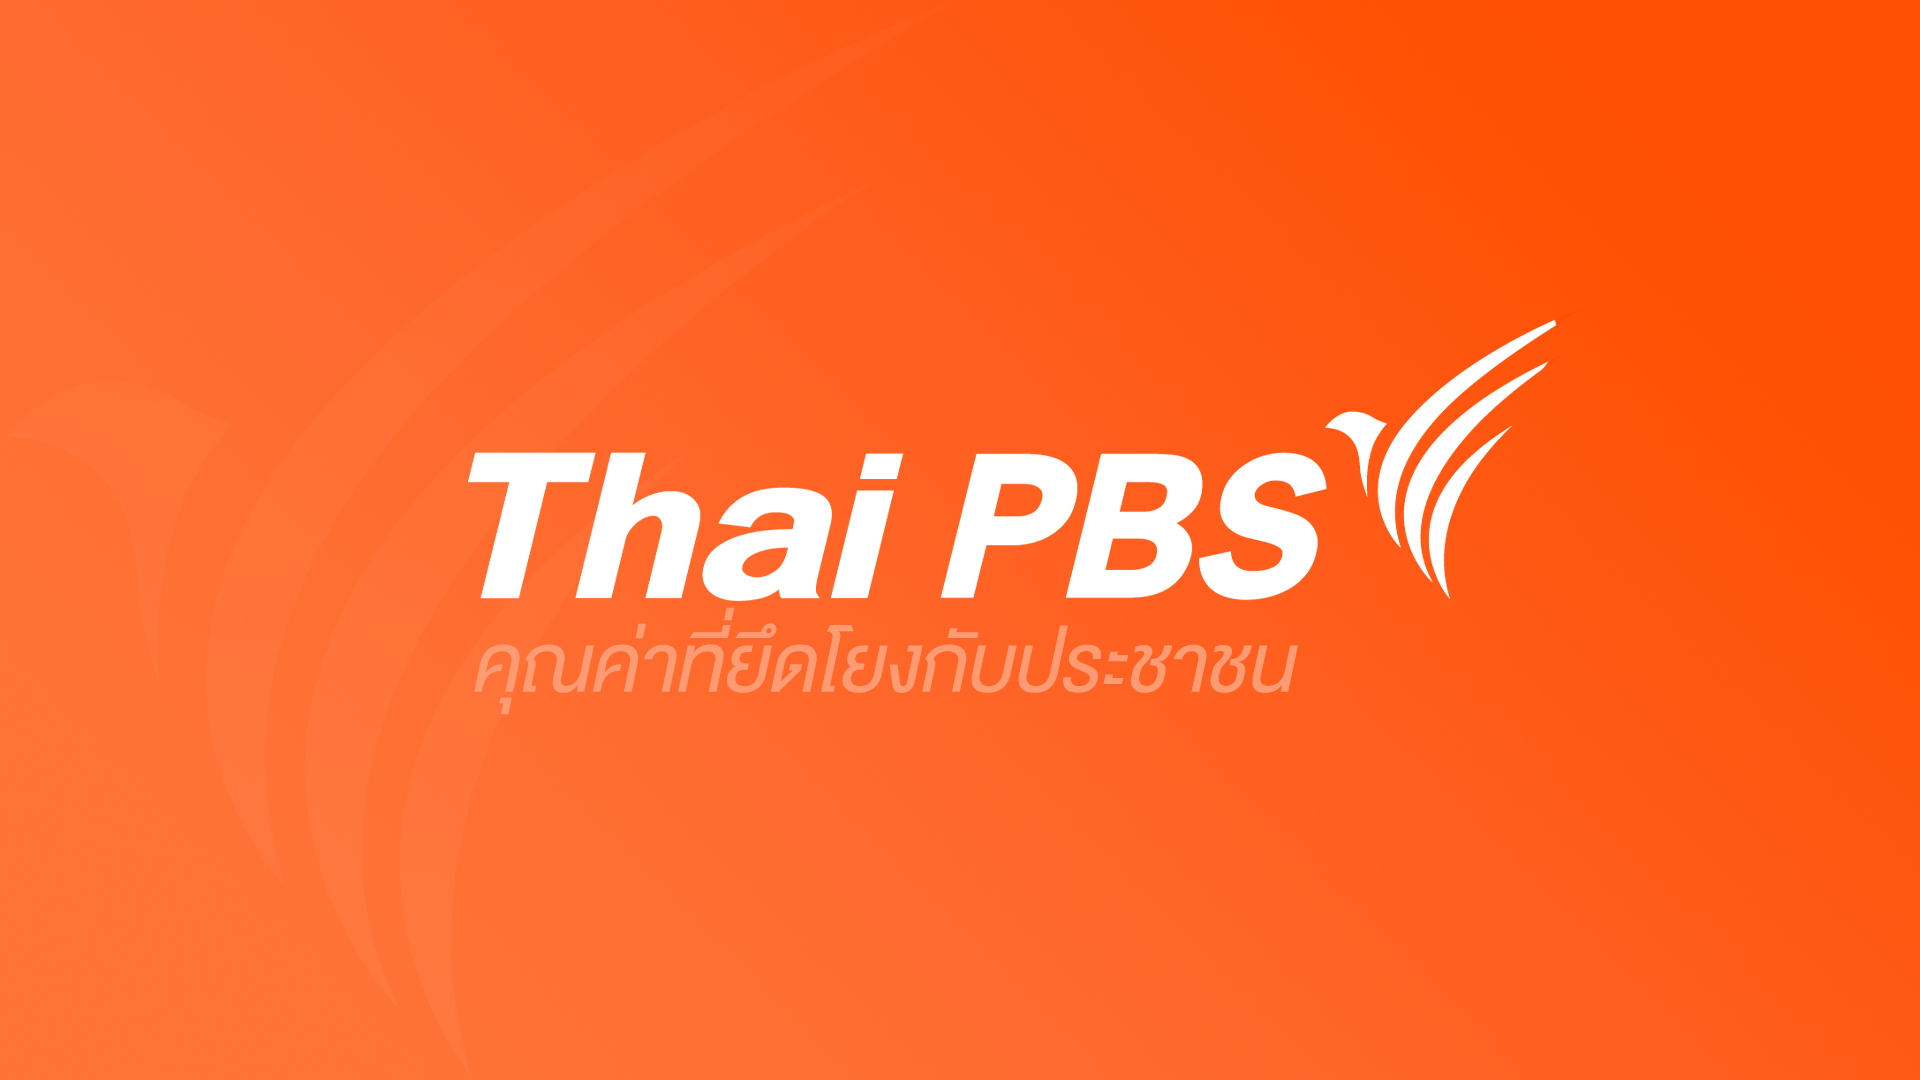 「アン・トンプラソム」が「テウ」がドラマ映画に退院した原因を明らかに | タイのエンターテイメント |  27 1月 ’23